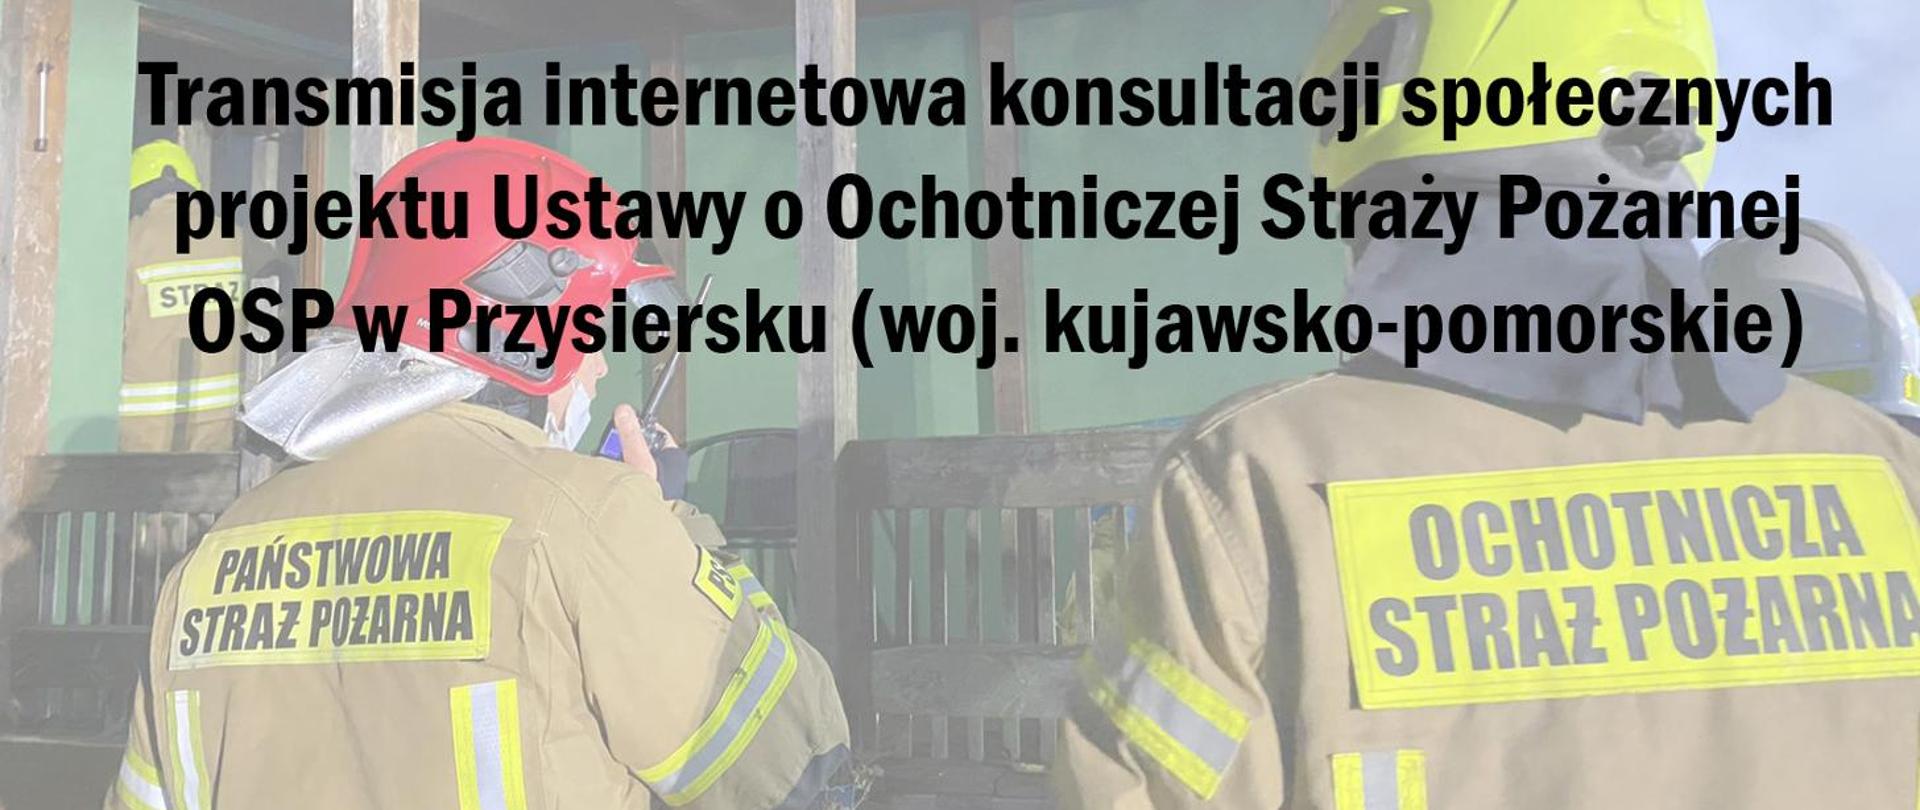 Grafika przedstawia dwóch strażaków - PSP i OSP w ubraniach specjalnych, odwróconych tyłem. Na grafice znajduje się informacja o internetowej konsultacjach społecznych projektu Ustawy o Ochotniczej Straży Pożarnej - OSP Przysiersk.